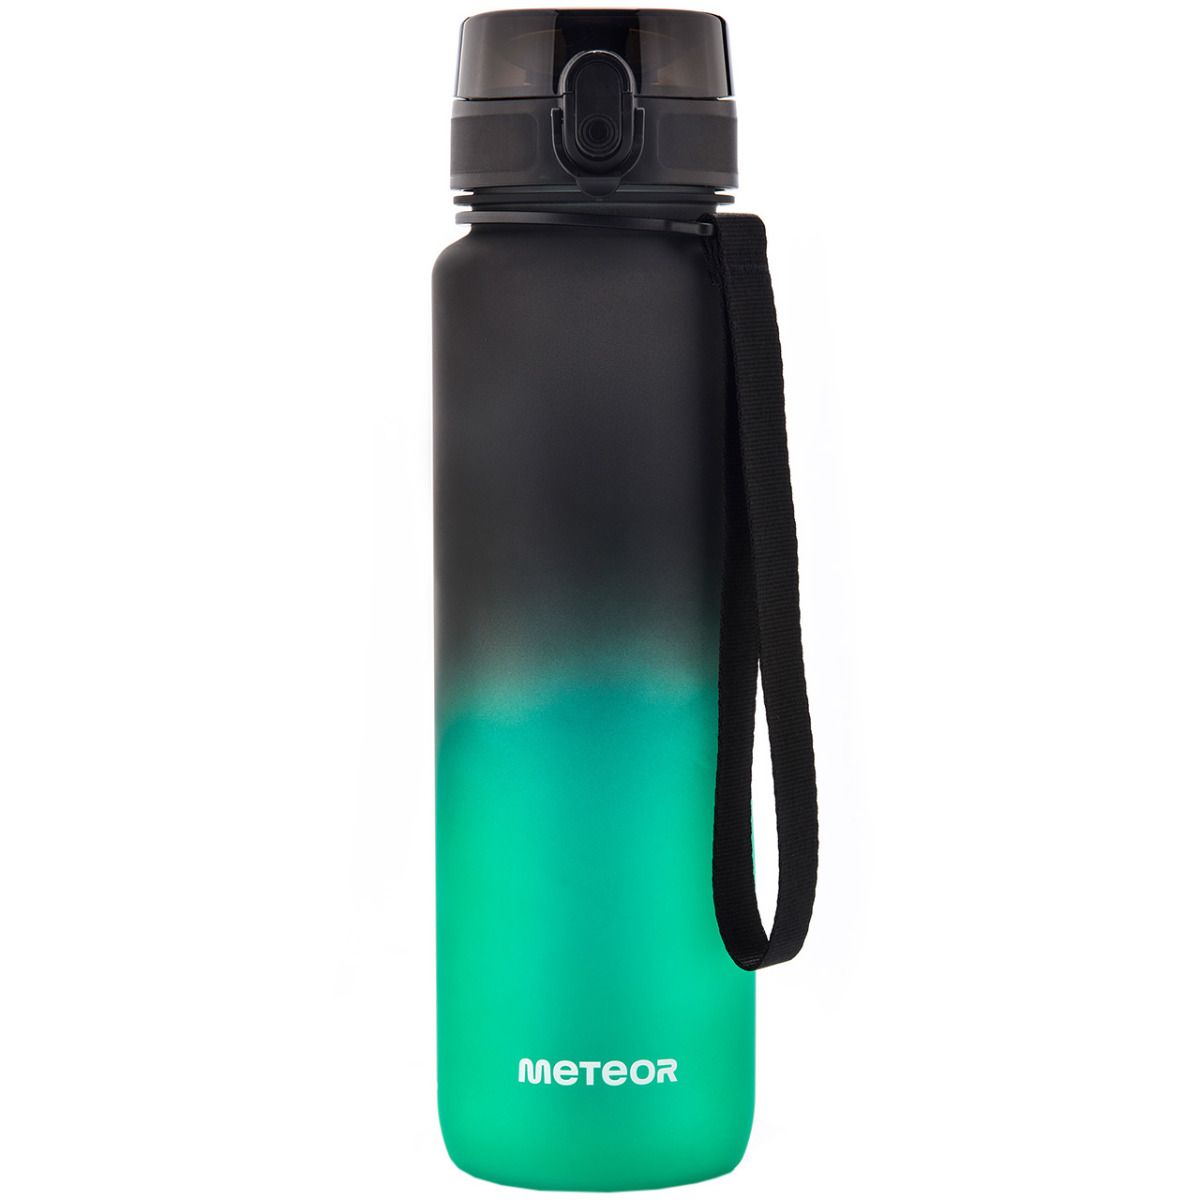 Meteor Wasserflasche 1000 ml 10106